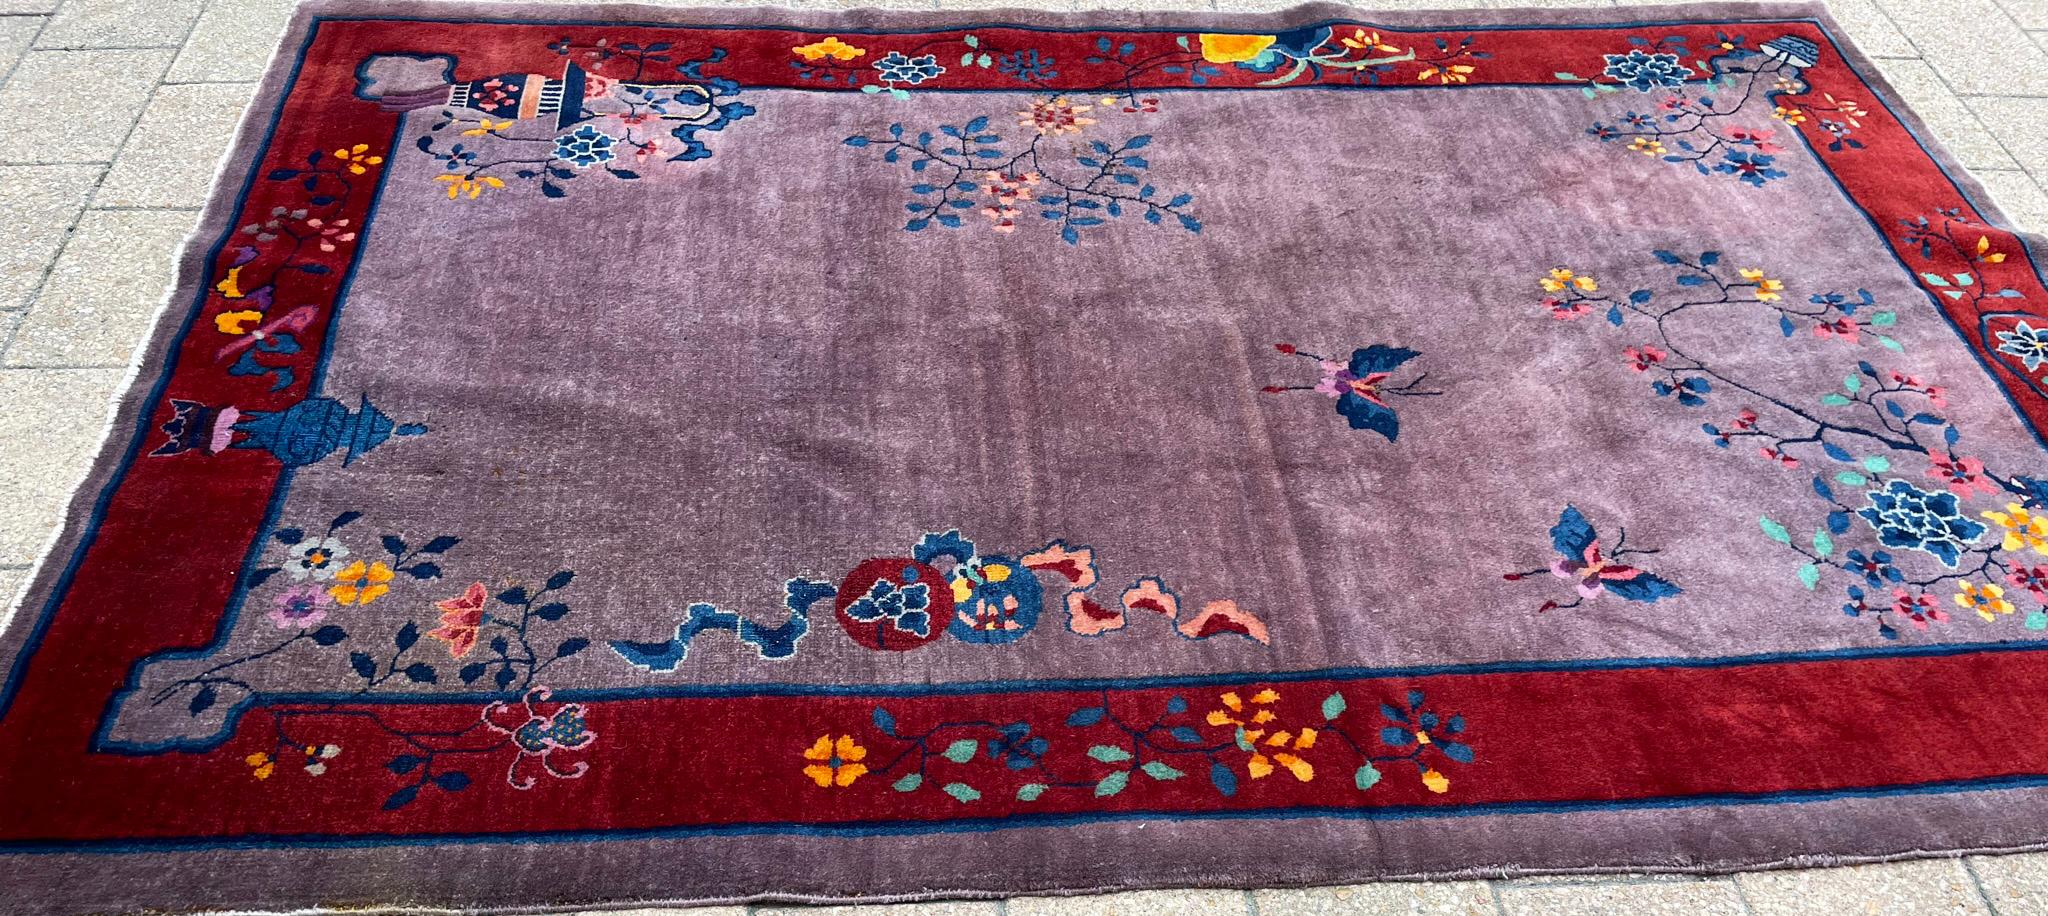 Treten Sie ein in eine Welt von seltener Eleganz mit unserem exquisiten Art-Déco-Teppich, einem wahren Wunderwerk aus den 1920er Jahren, das den Charme einer vergangenen Epoche versprüht. Dieser in China mit Präzision gefertigte Teppich ist ein